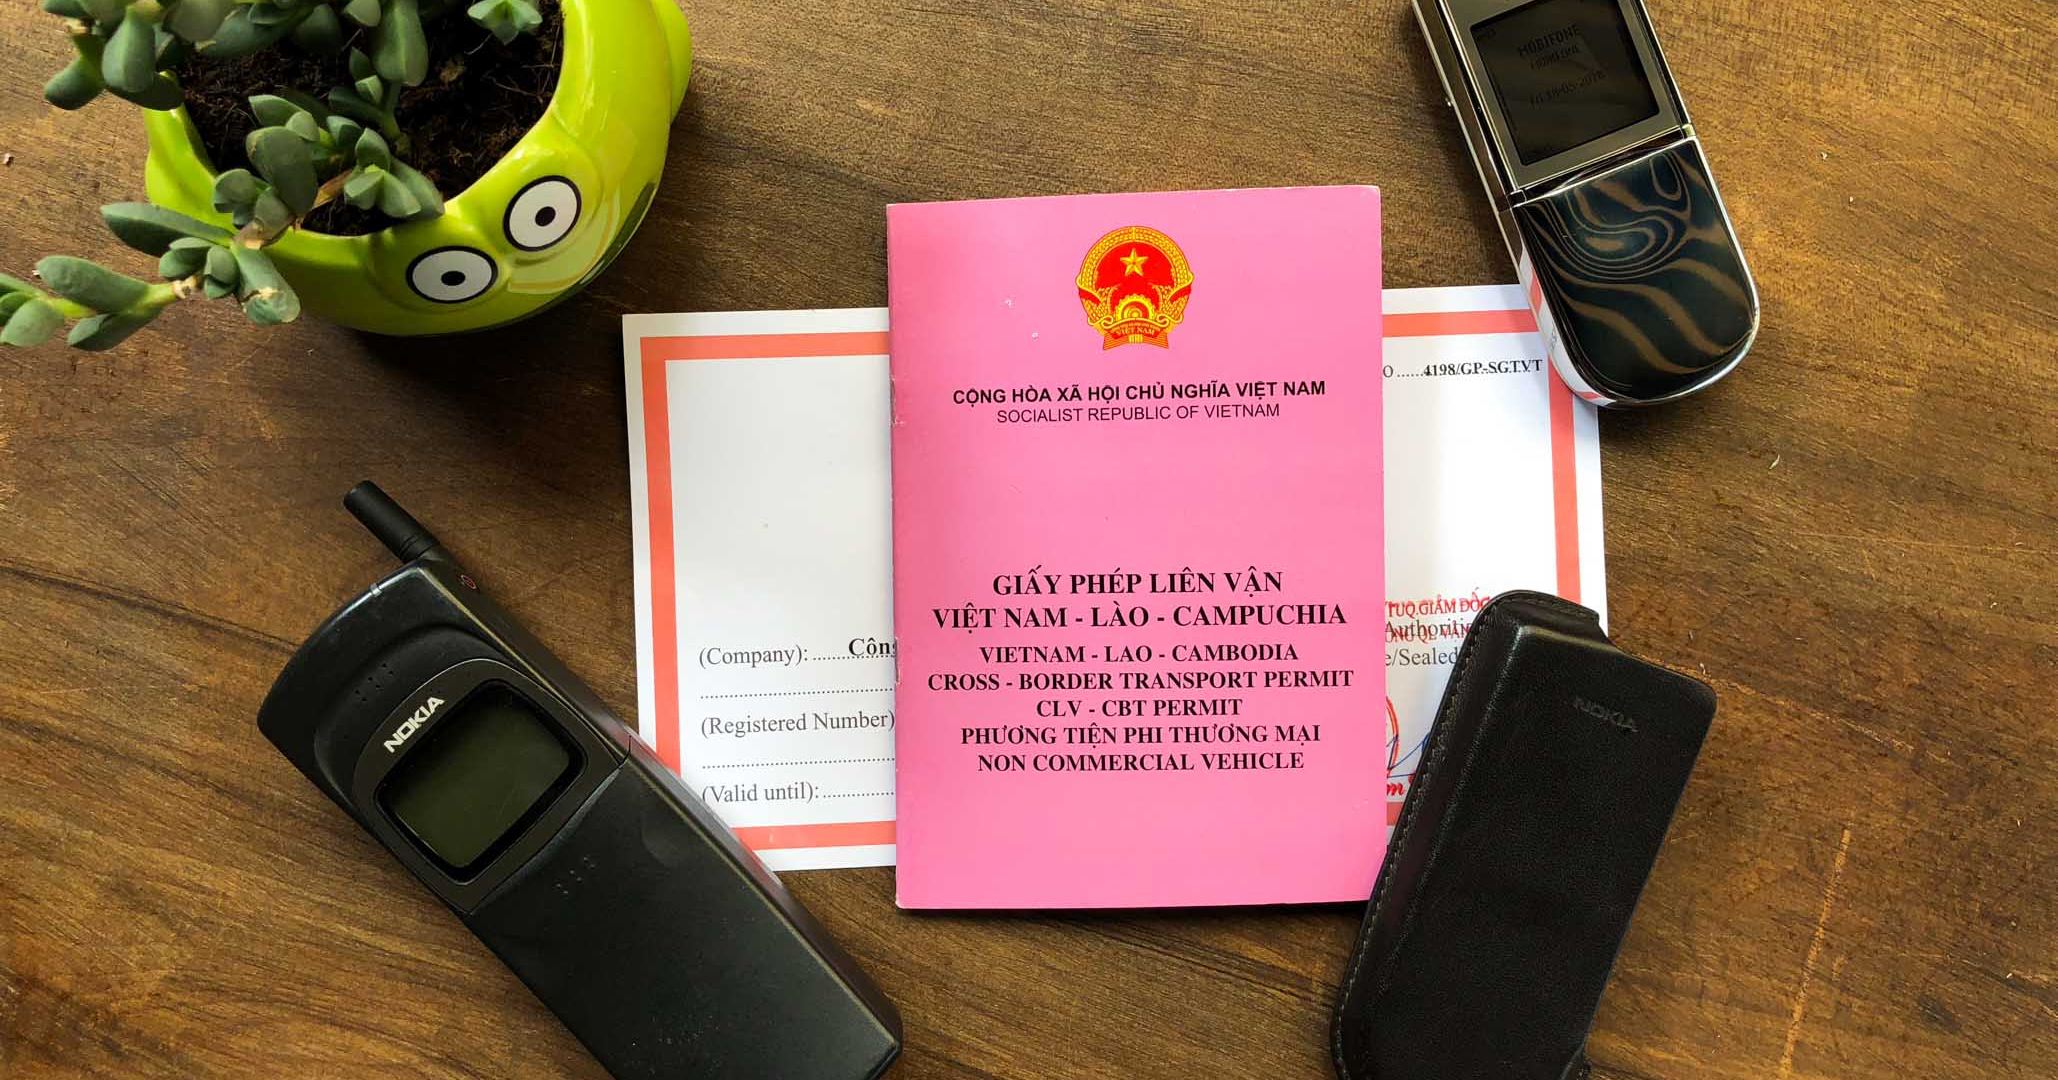 Hướng dẫn thủ tục xin lái xe từ Việt Nam đi Cambodia, Lào : Mất 3 ngày, Phí 50 nghìn đồng VND